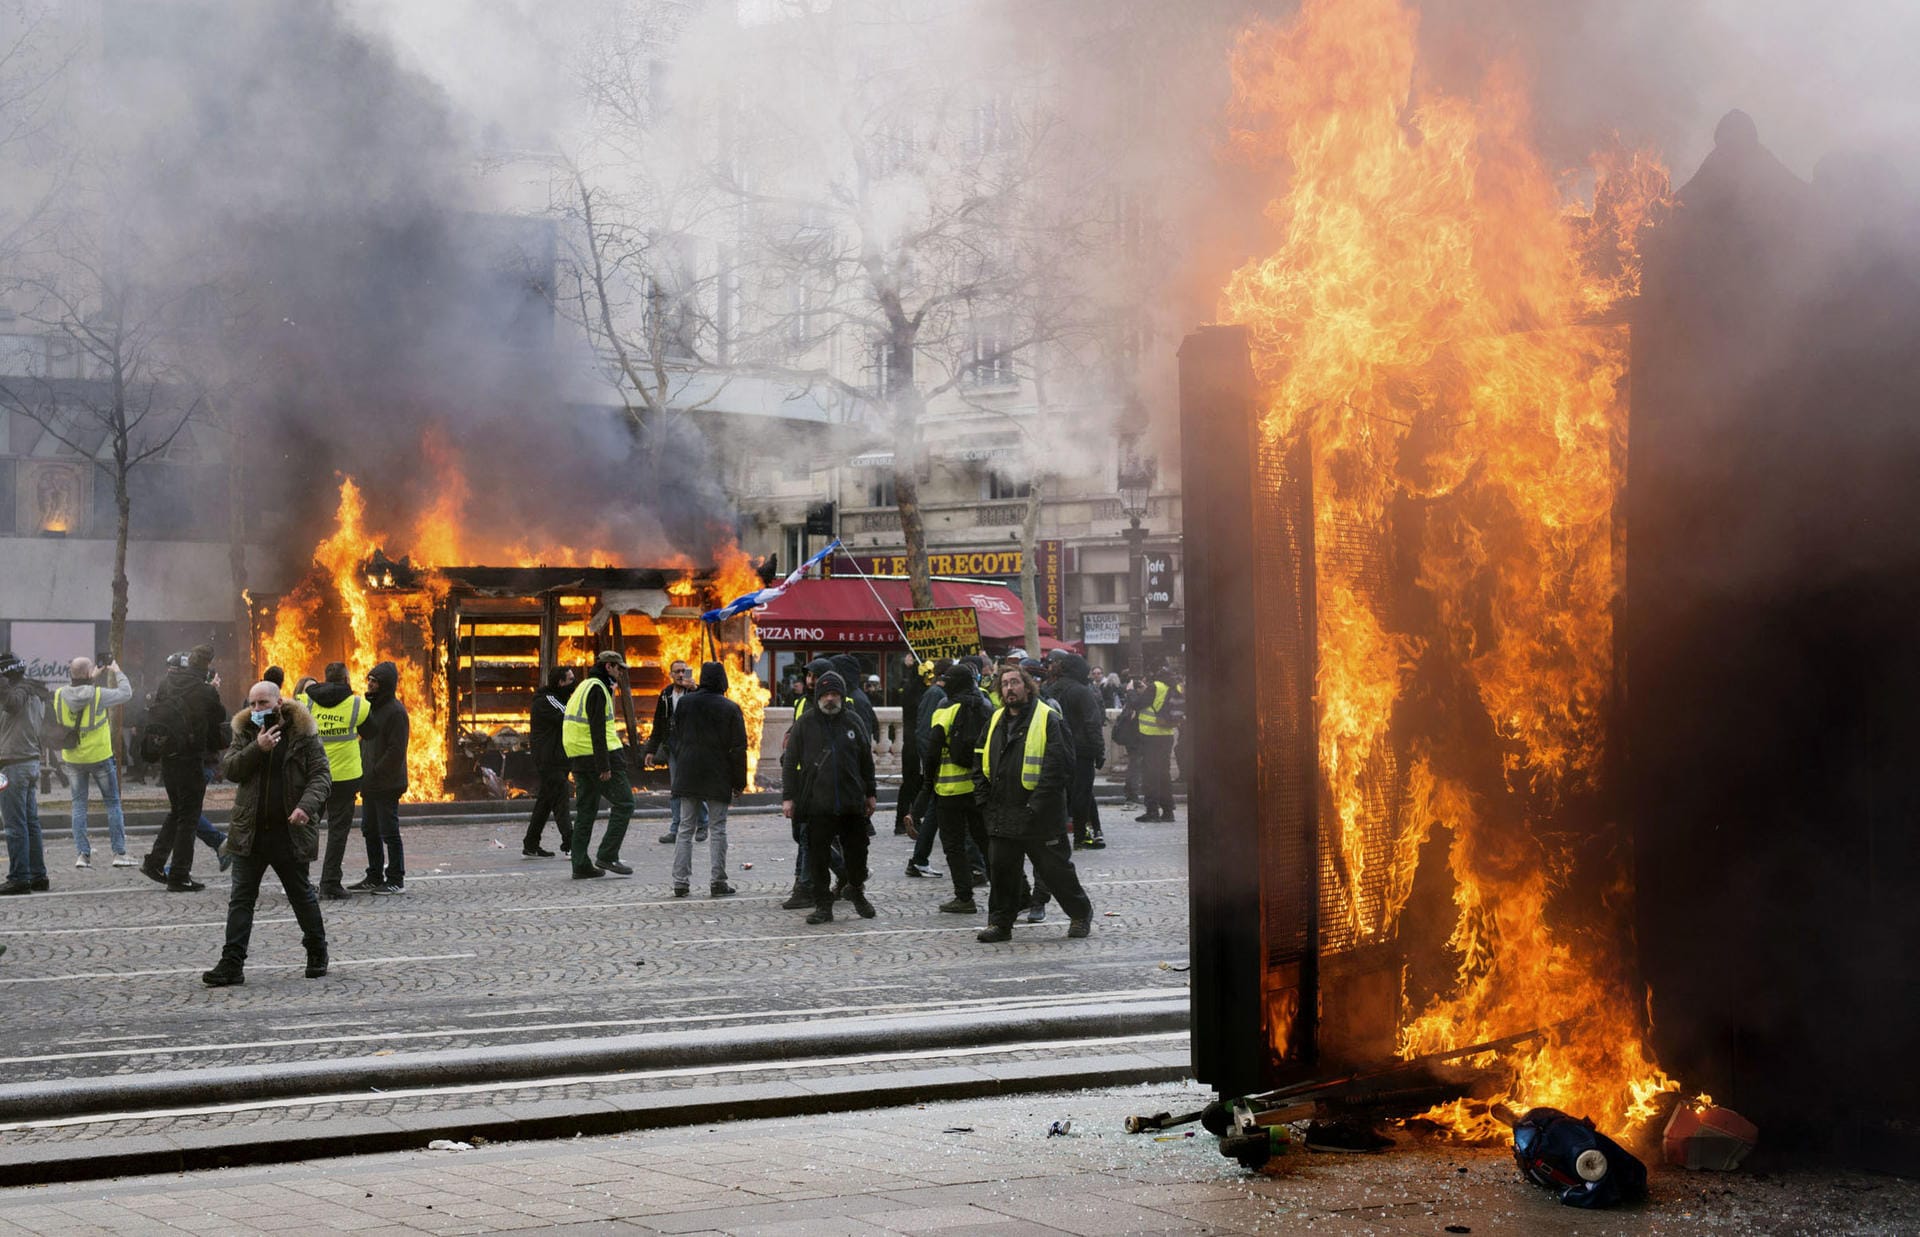 Feuer: Bei den Protesten der "Gelbwesten" in Paris ist es zu schweren gewalttätigen Ausschreitungen gekommen.